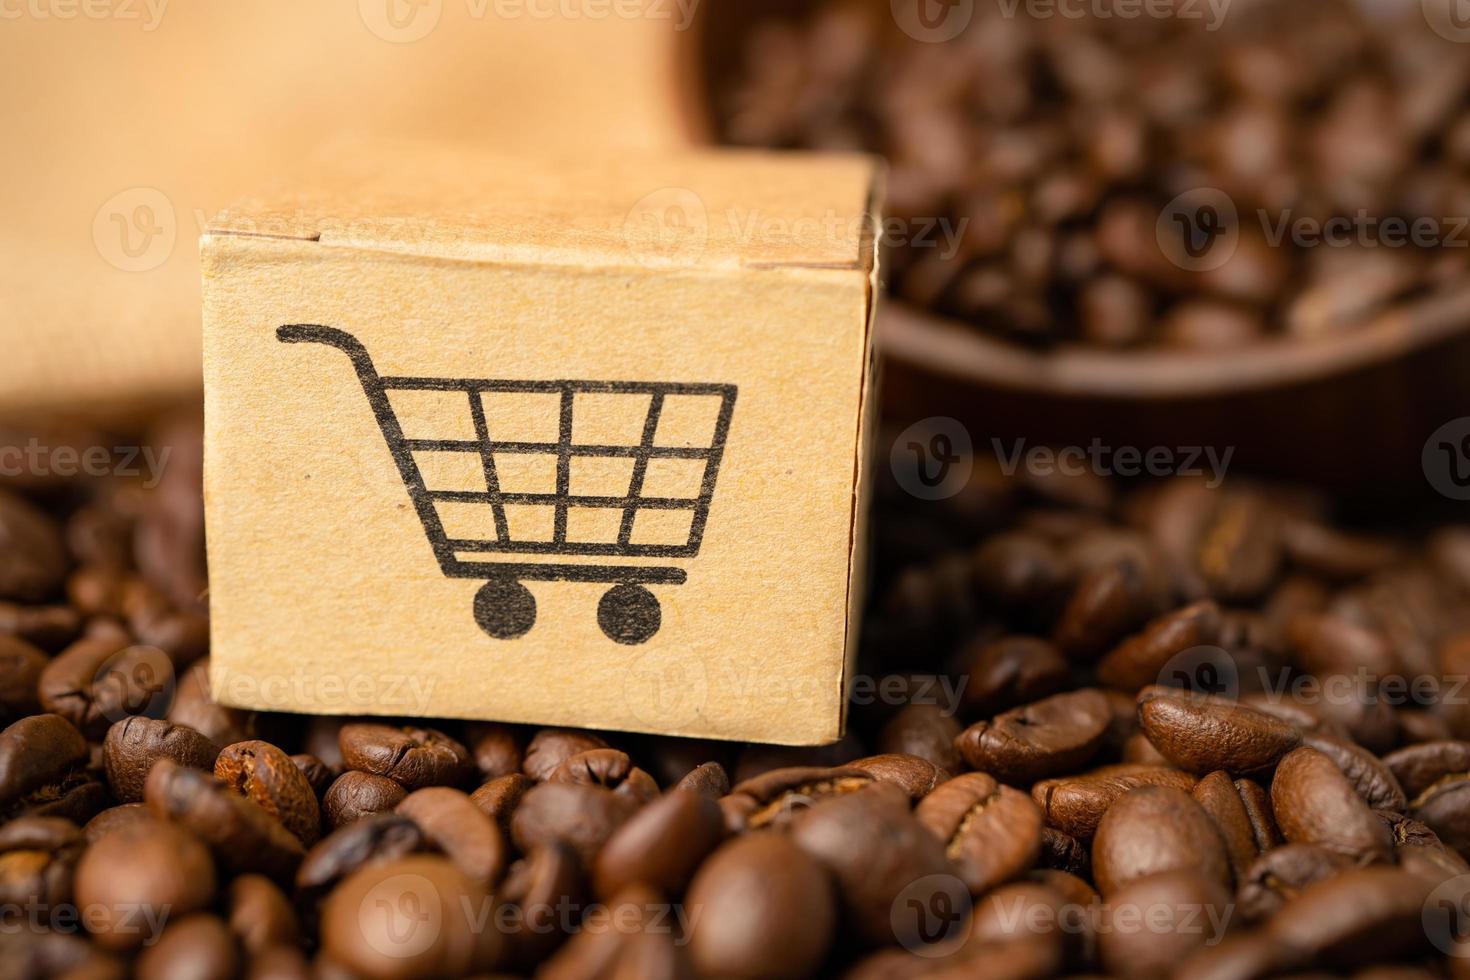 doos met winkelwagen logo symbool op koffiebonen, import export online winkelen of e-commerce bezorgservice winkel product verzending, handel, leverancier concept. foto